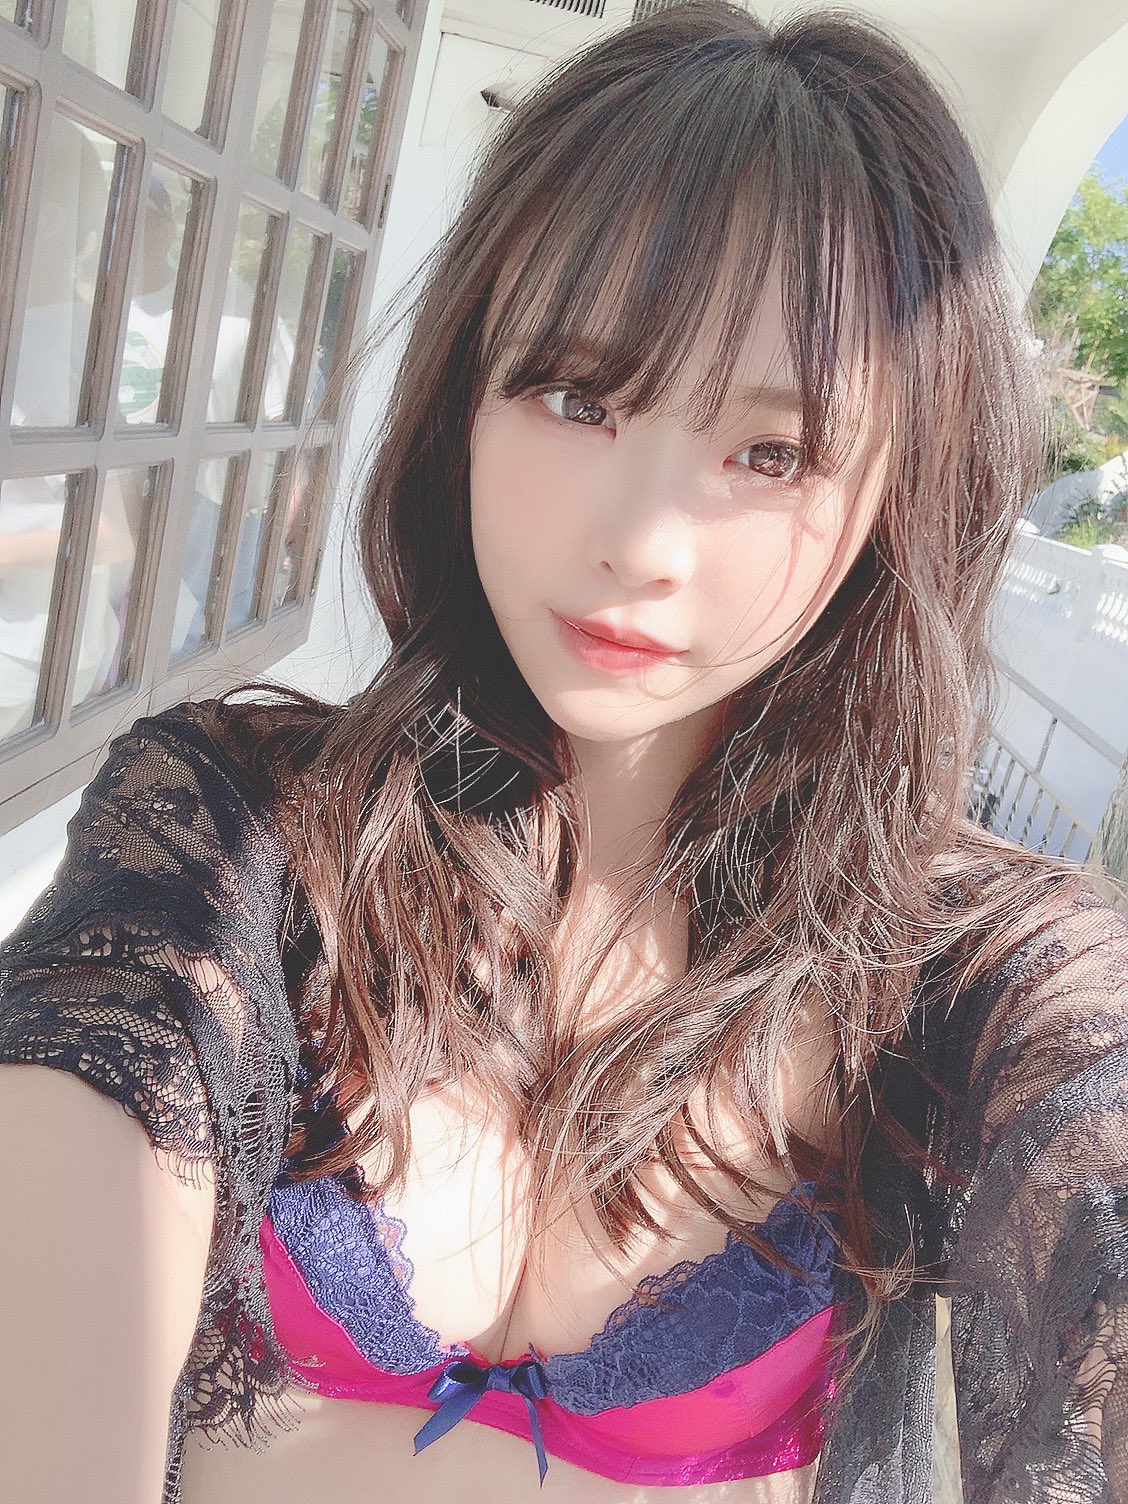 [Tin] - Ngắm vẻ quyến rũ của Hiyori Yoshioka cô đào 18+